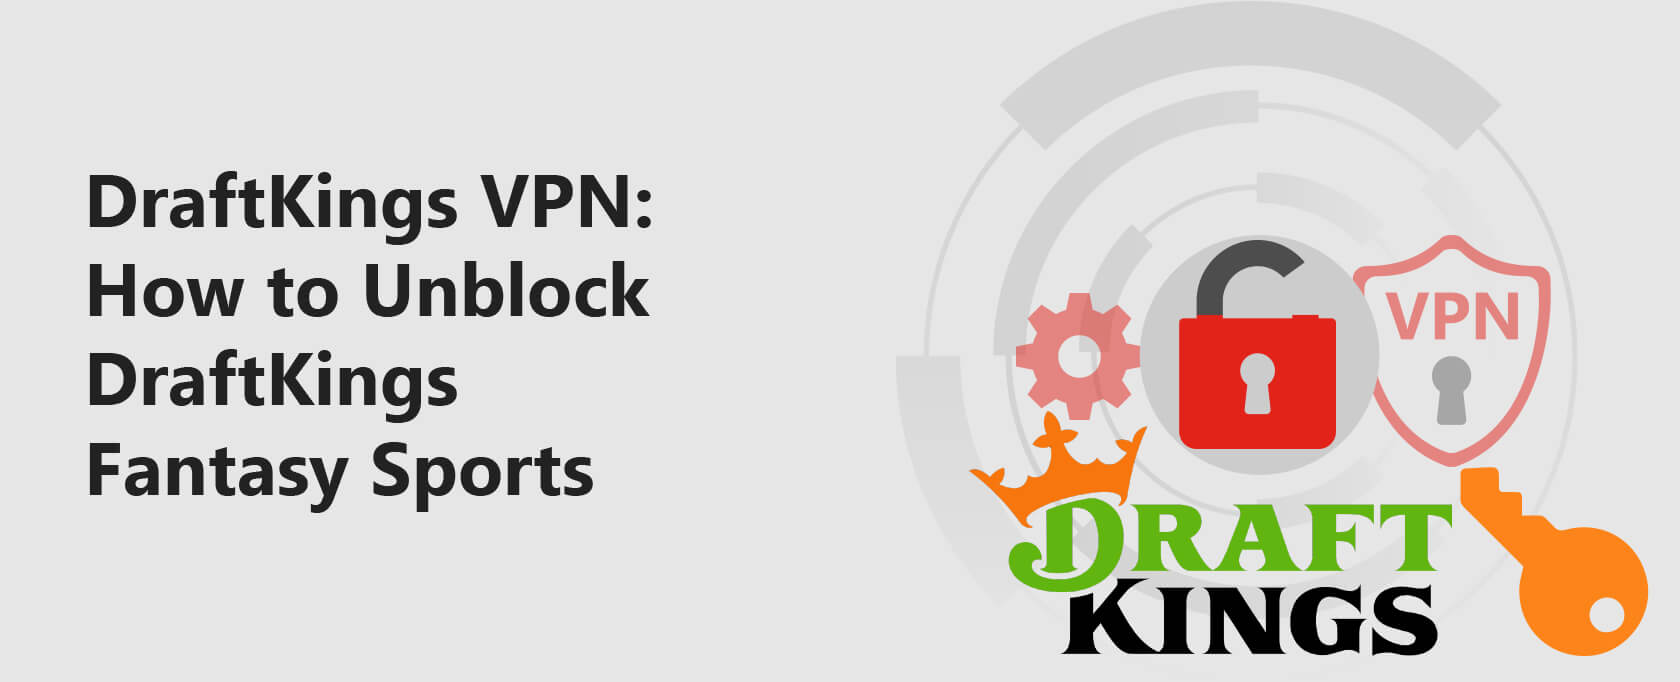 DraftKings VPN